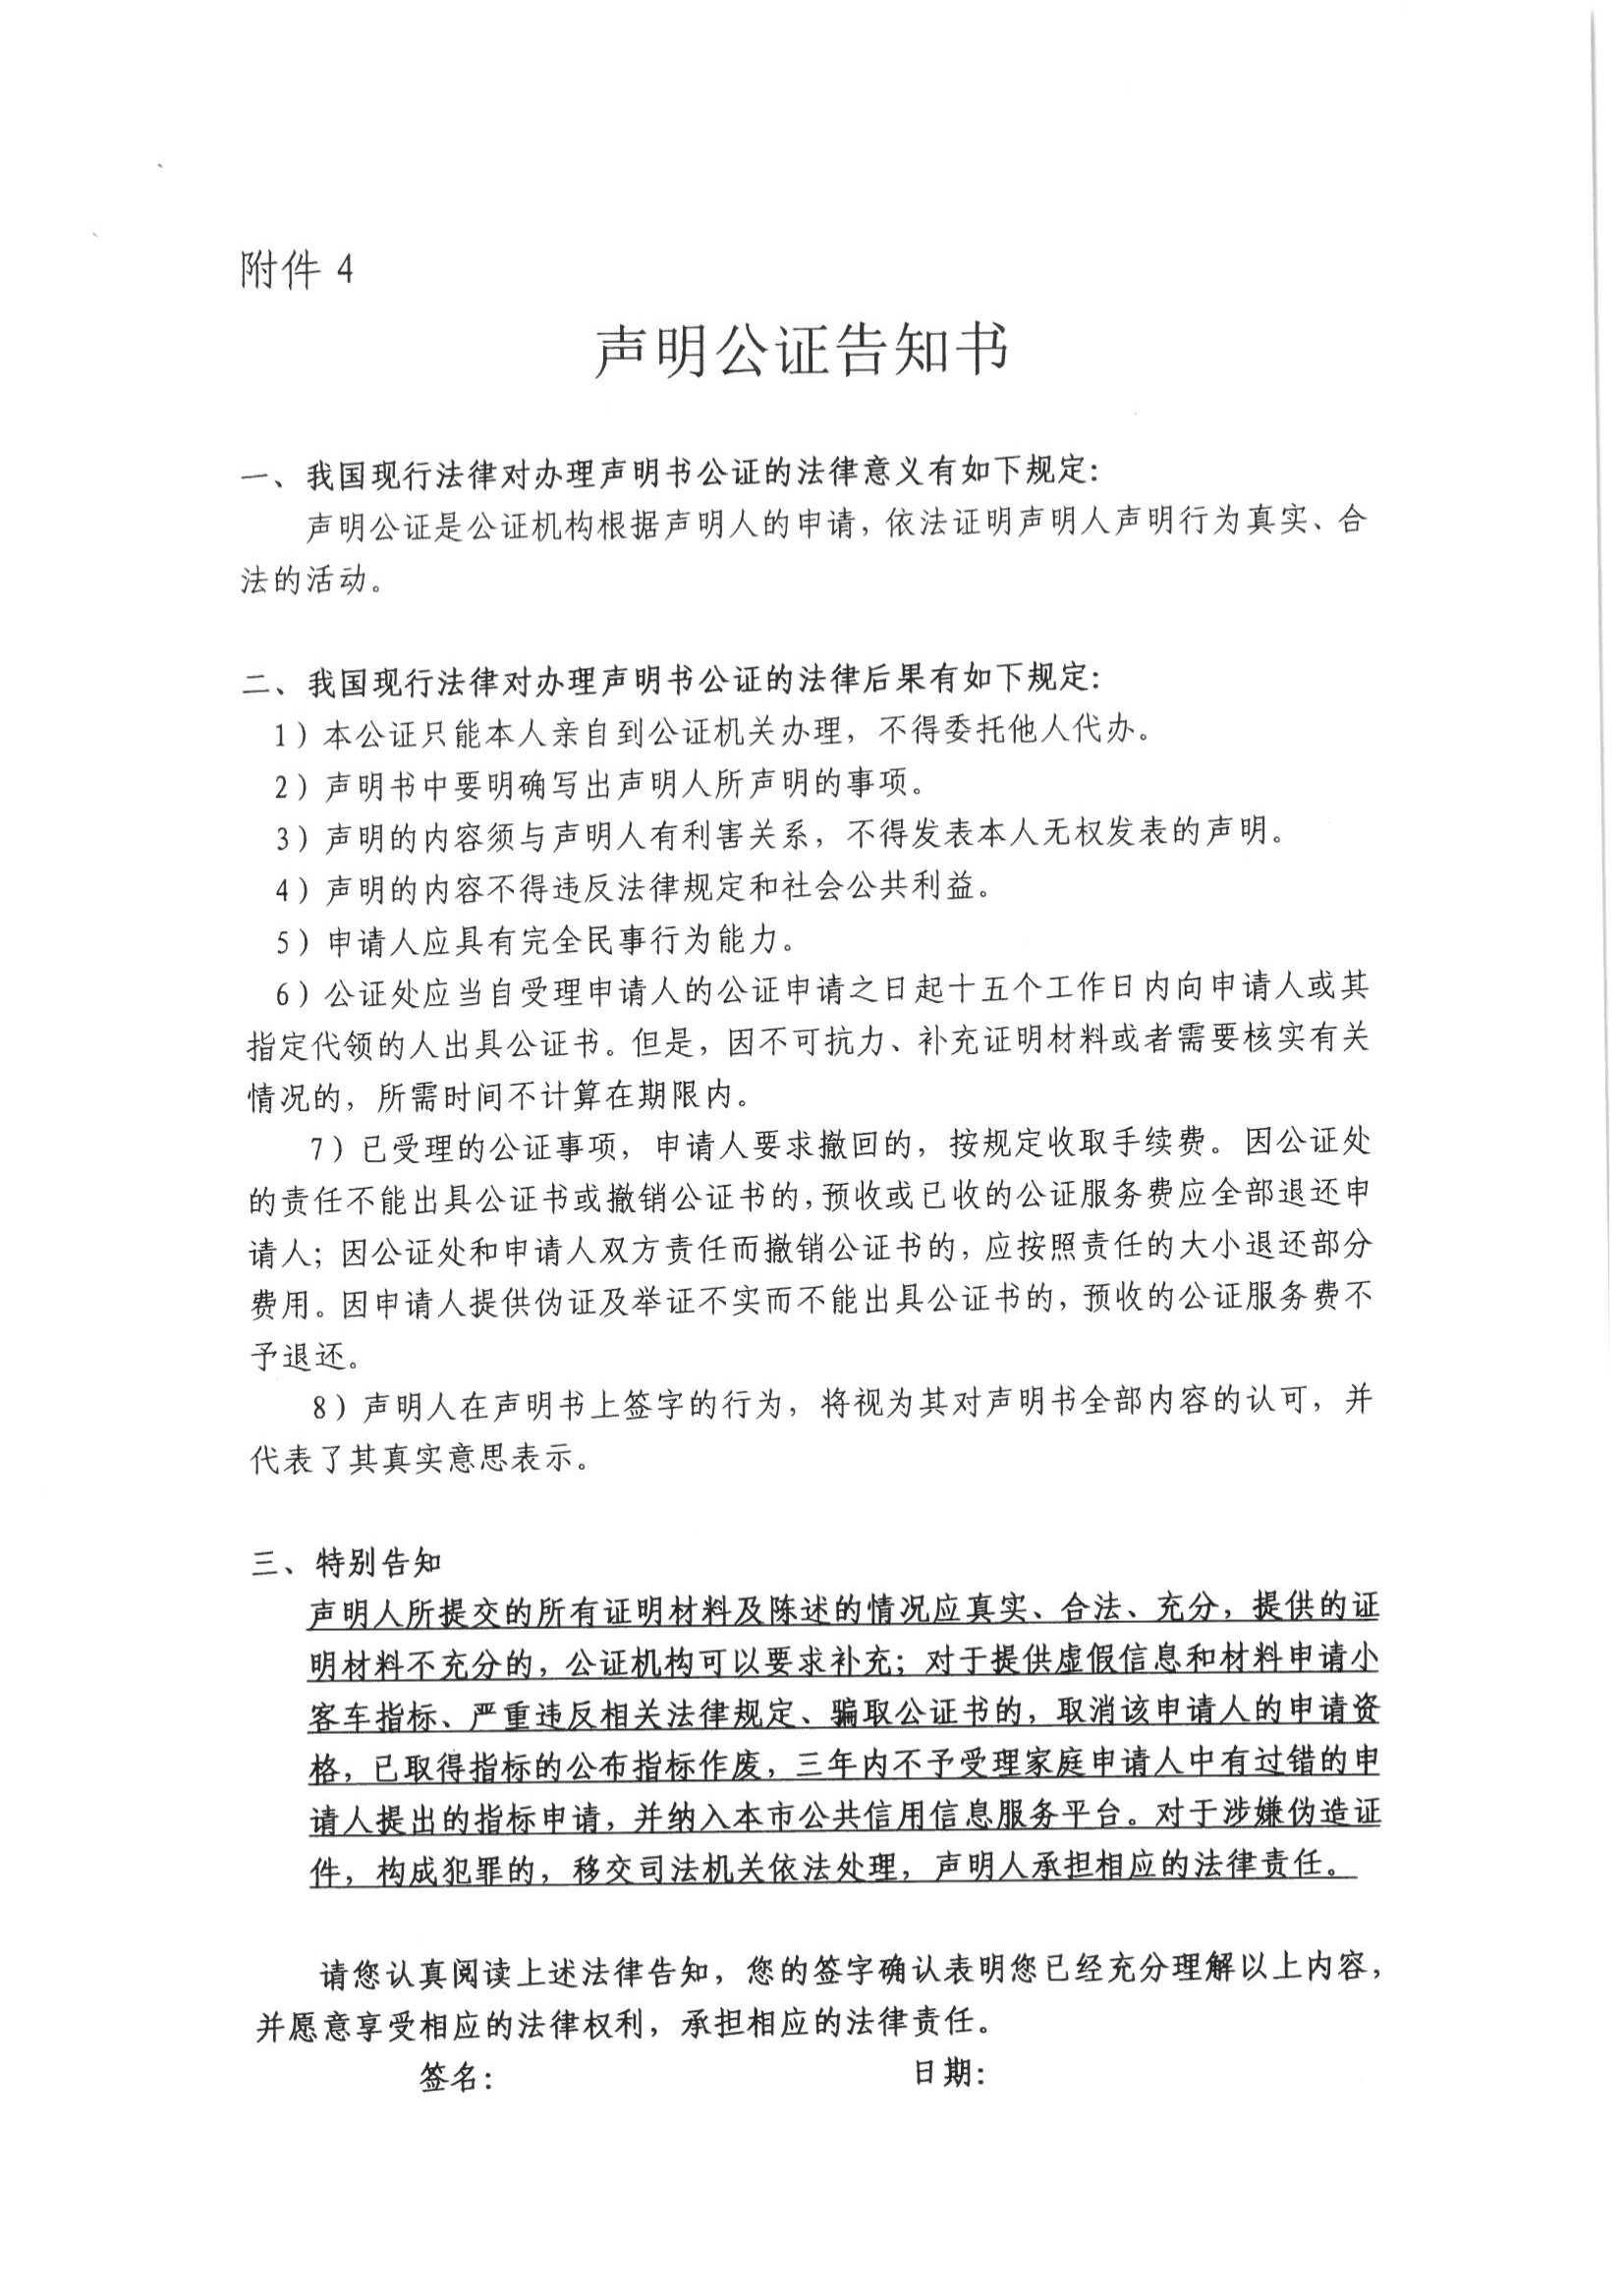 10、北京市公证协会关于印发《北京市公证协会规范执业指引》第10号的通知_09